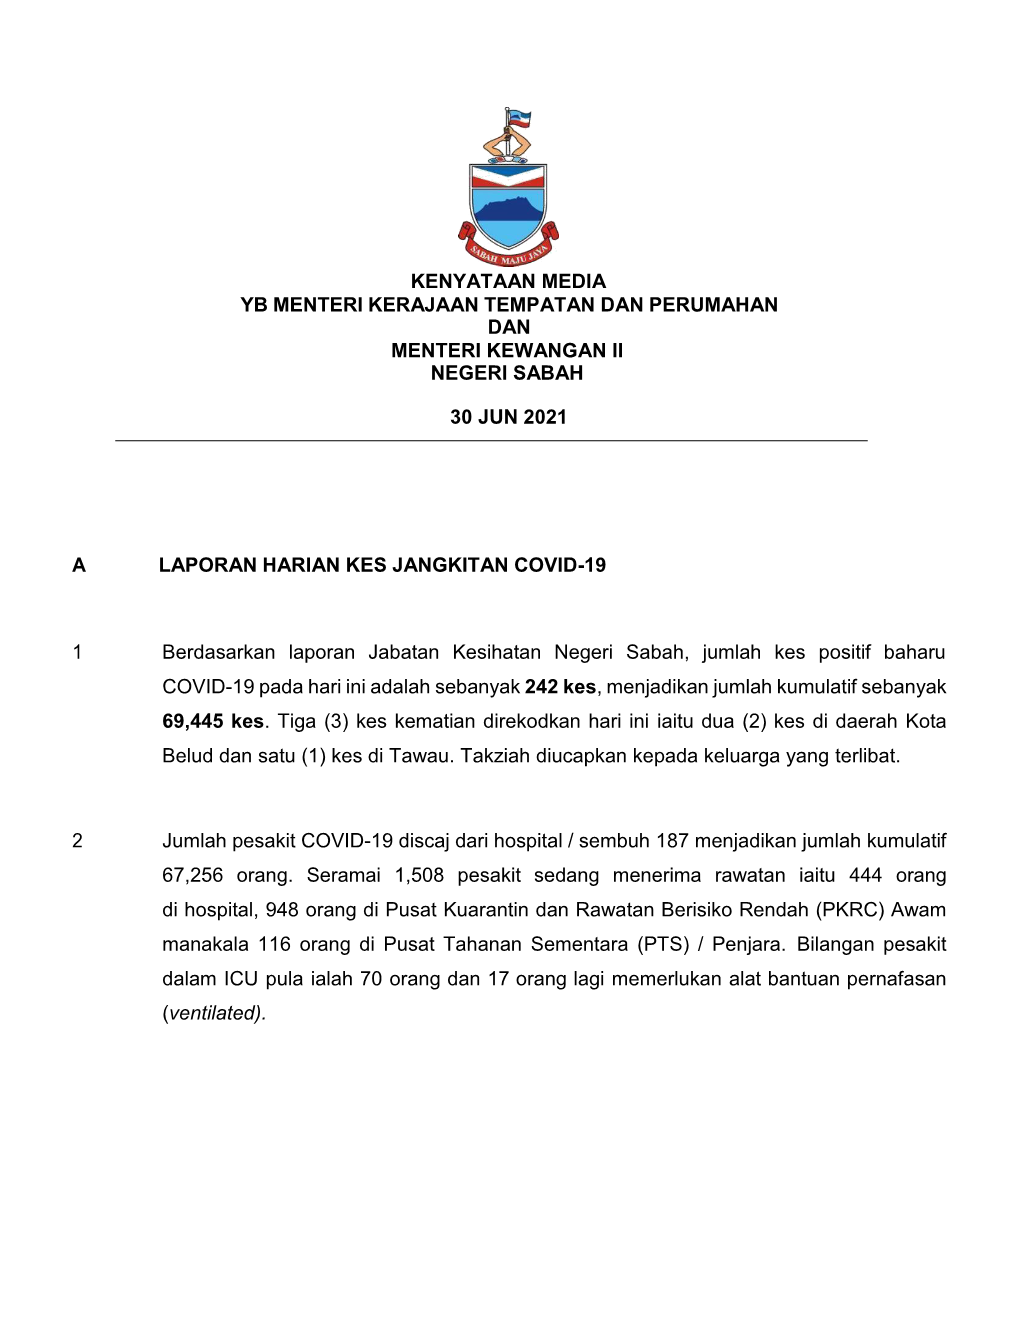 Kenyataan Media Yb Menteri Kerajaan Tempatan Dan Perumahan Dan Menteri Kewangan Ii Negeri Sabah 30 Jun 2021 a Laporan Harian Ke